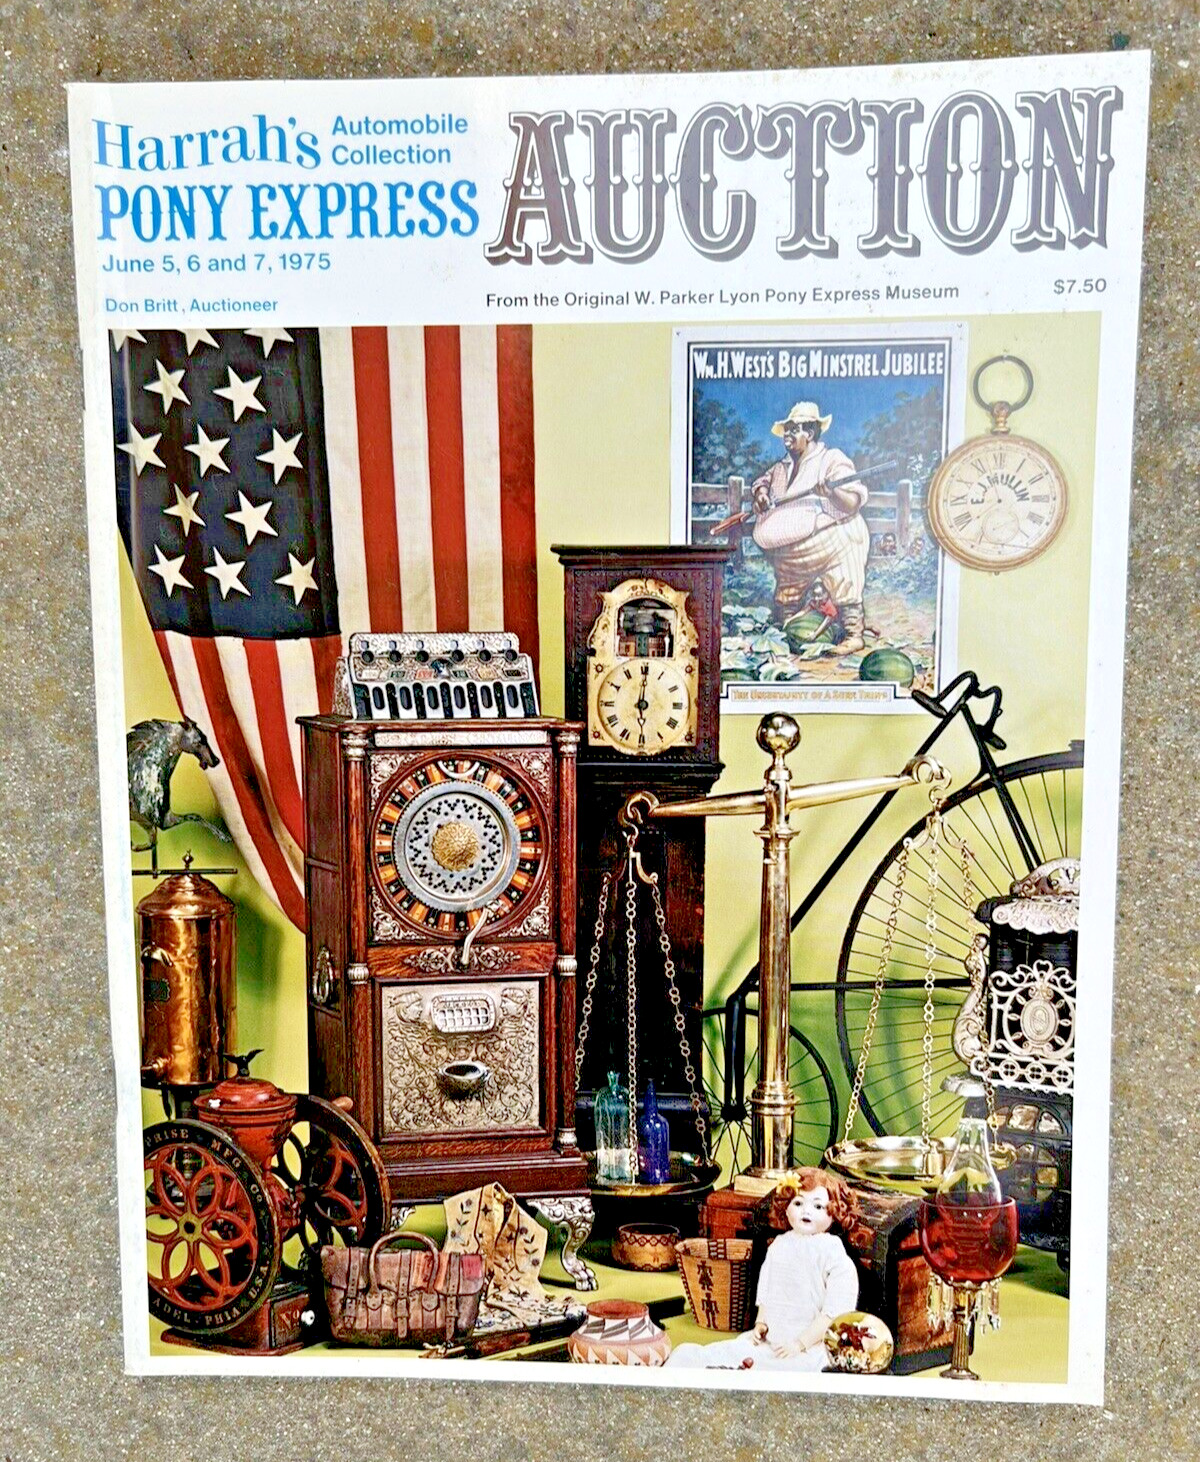 Rare Original 1975 Harrahs Pony Express Museum Auction Catalog W. Parker Lyon